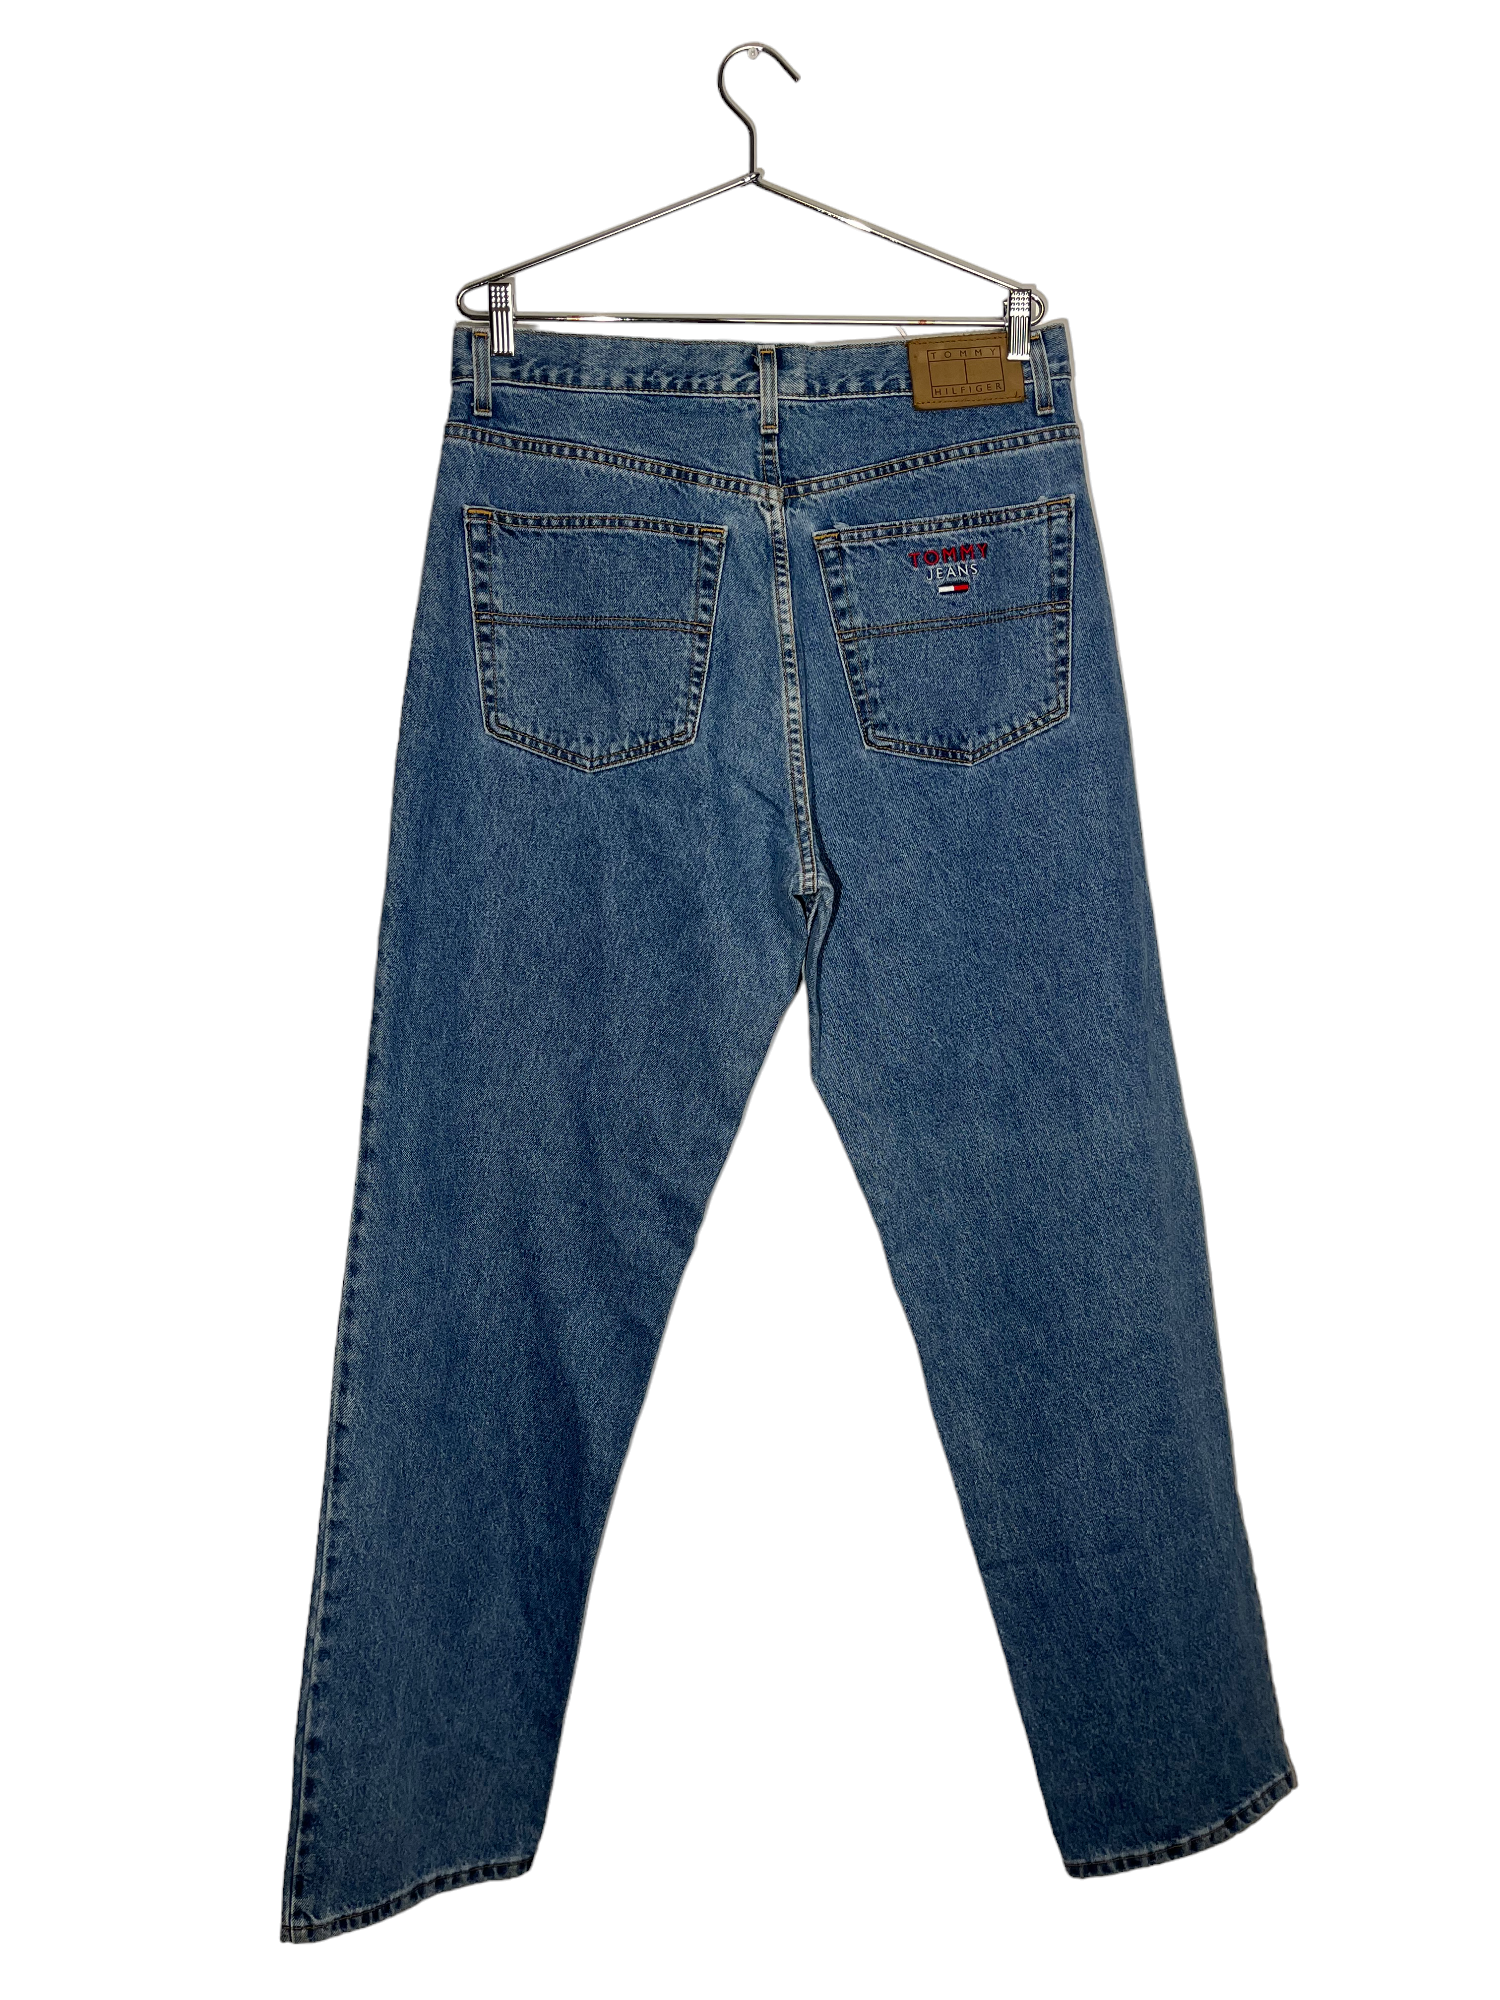 Vintage Tommy Hilfiger Lined Jeans